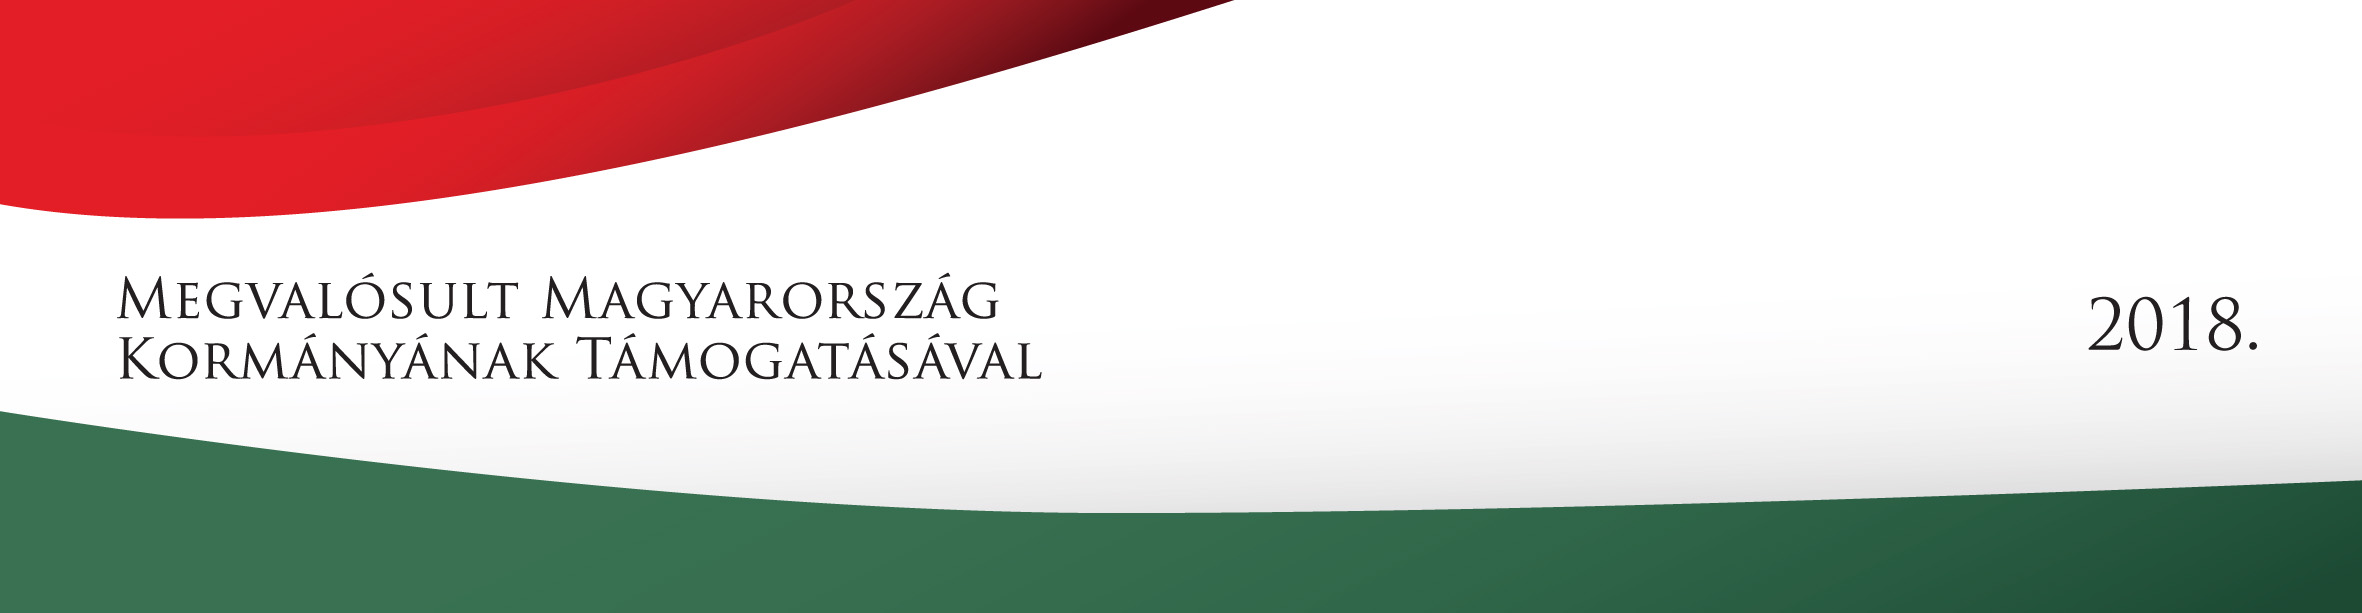 Megvalósult Magyarország Kormányának Támogatásával 2018 logó